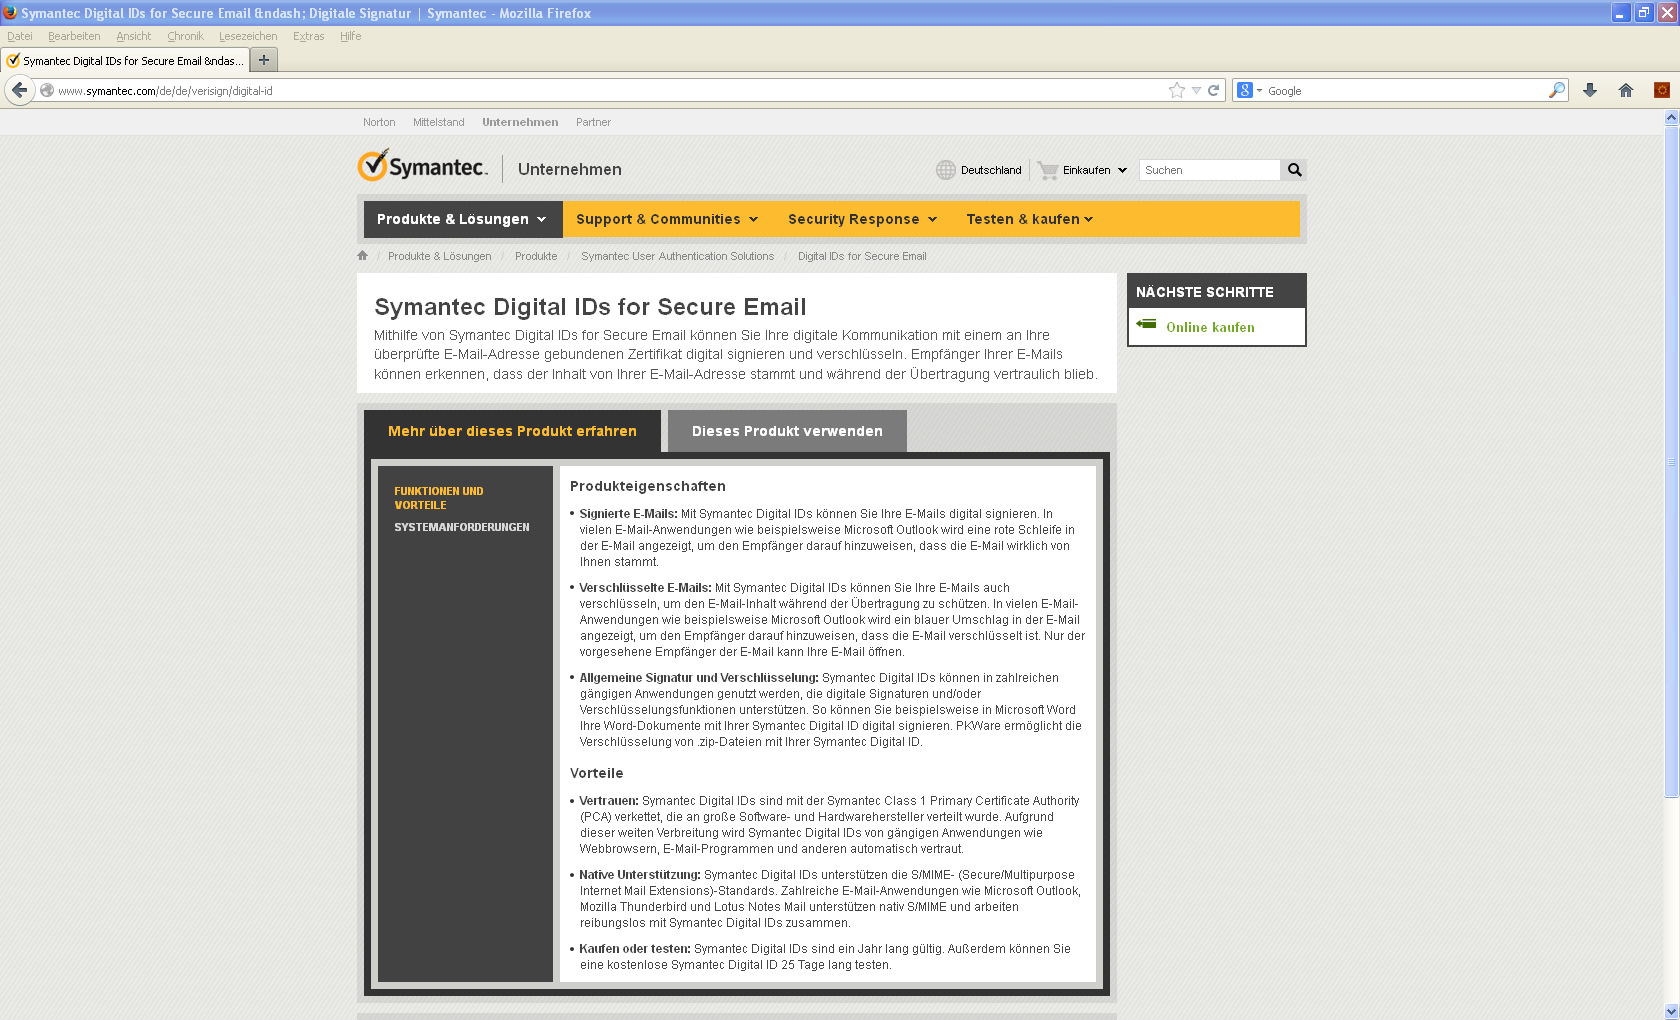 Bei den folgenden Erläuterungen und Screenshots wird als Beispiel das Zertifikat Digital ID von Symantec genutzt.